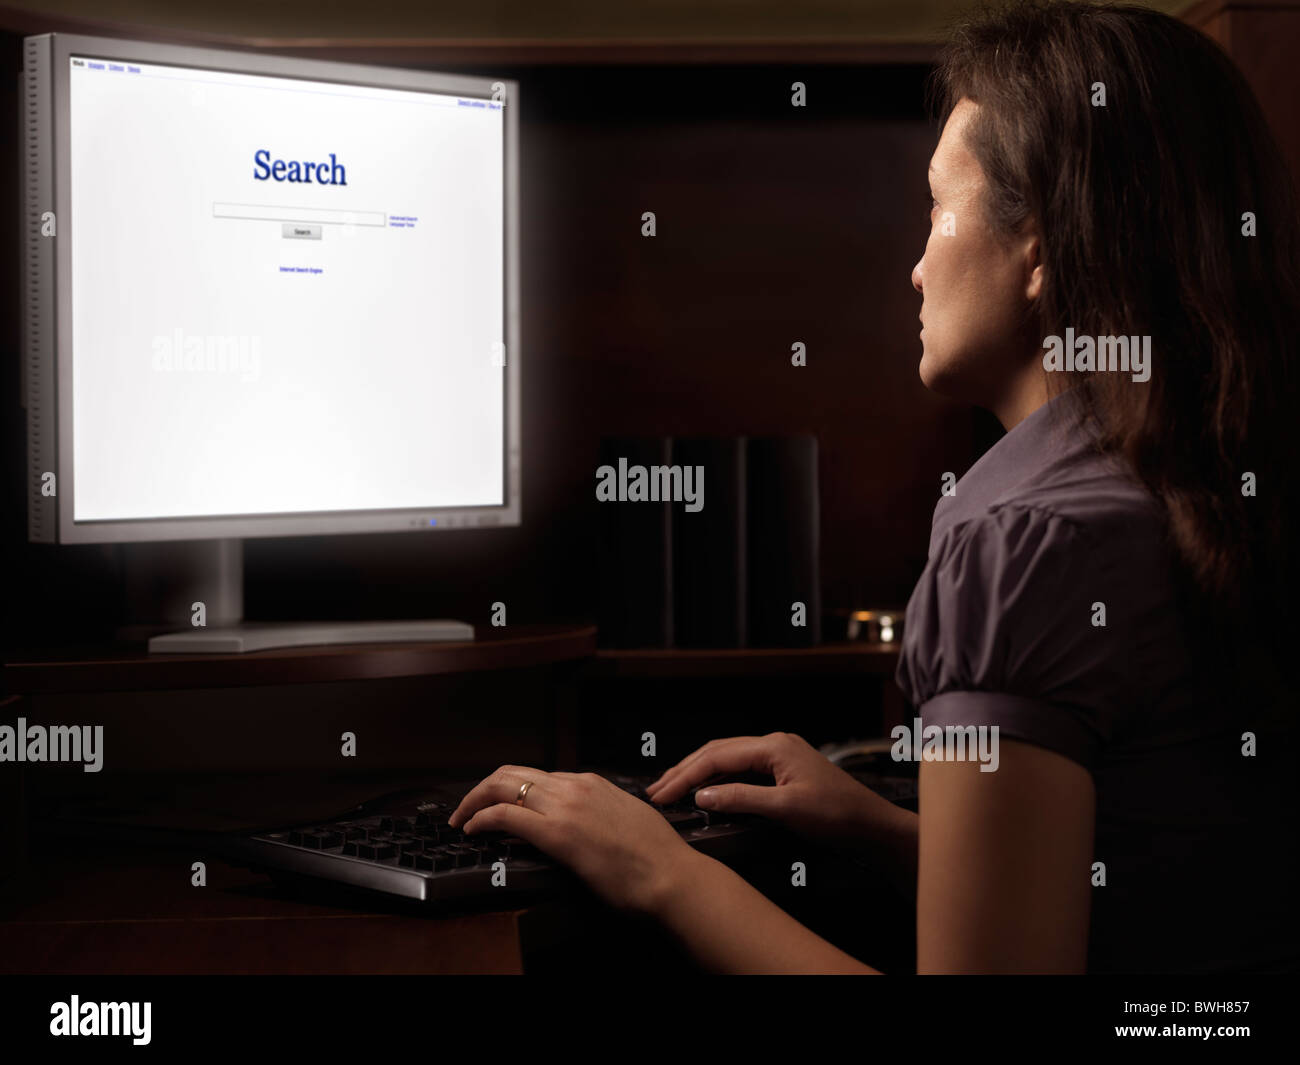 Jeune femme assise à un bureau informatique avec internet Moteur de recherche sur l'affichage Banque D'Images